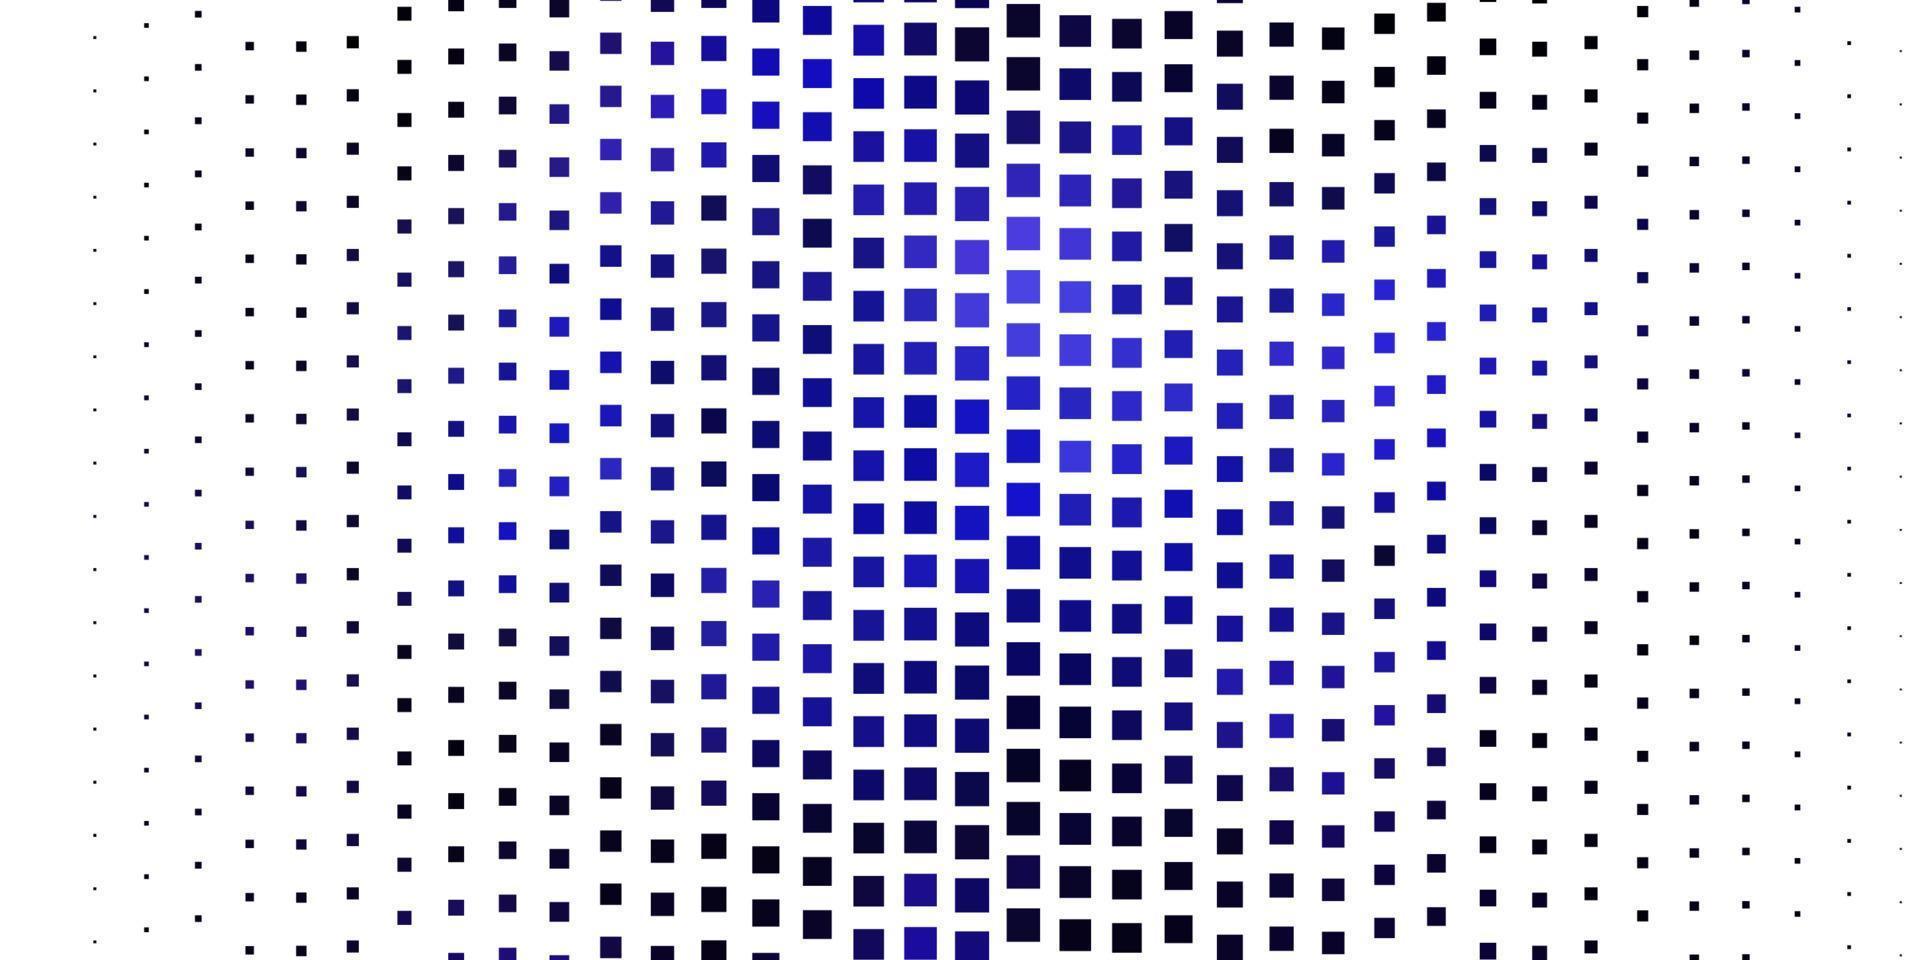 mörkrosa, blå vektorstruktur i rektangulär stil. vektor